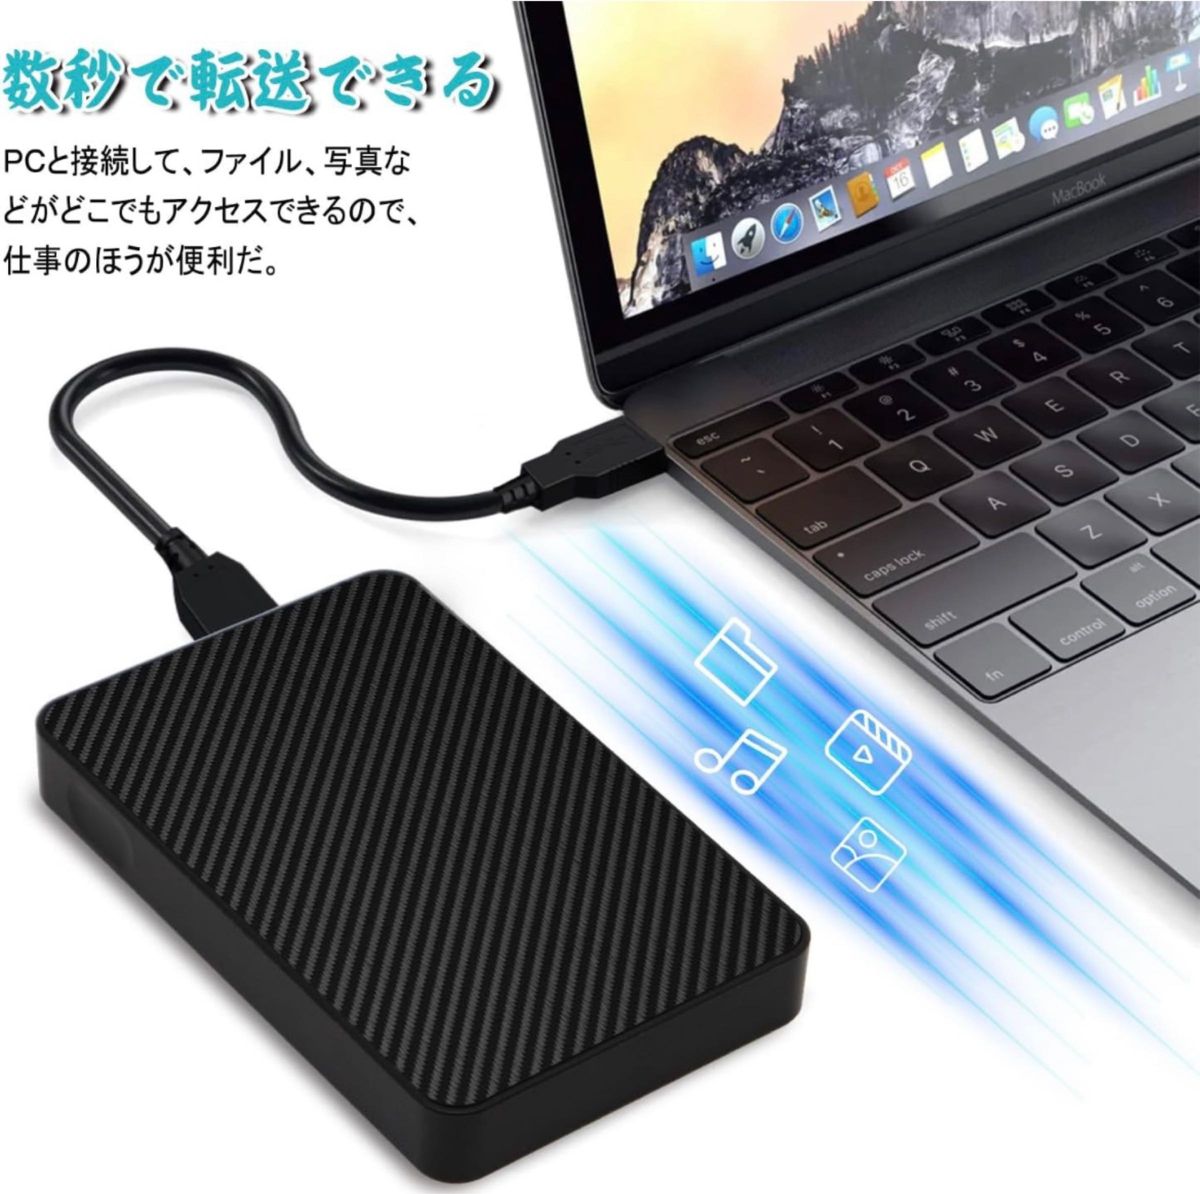 ハードディスク USB3.0ポータブルハードディスク 防水防塵2TB